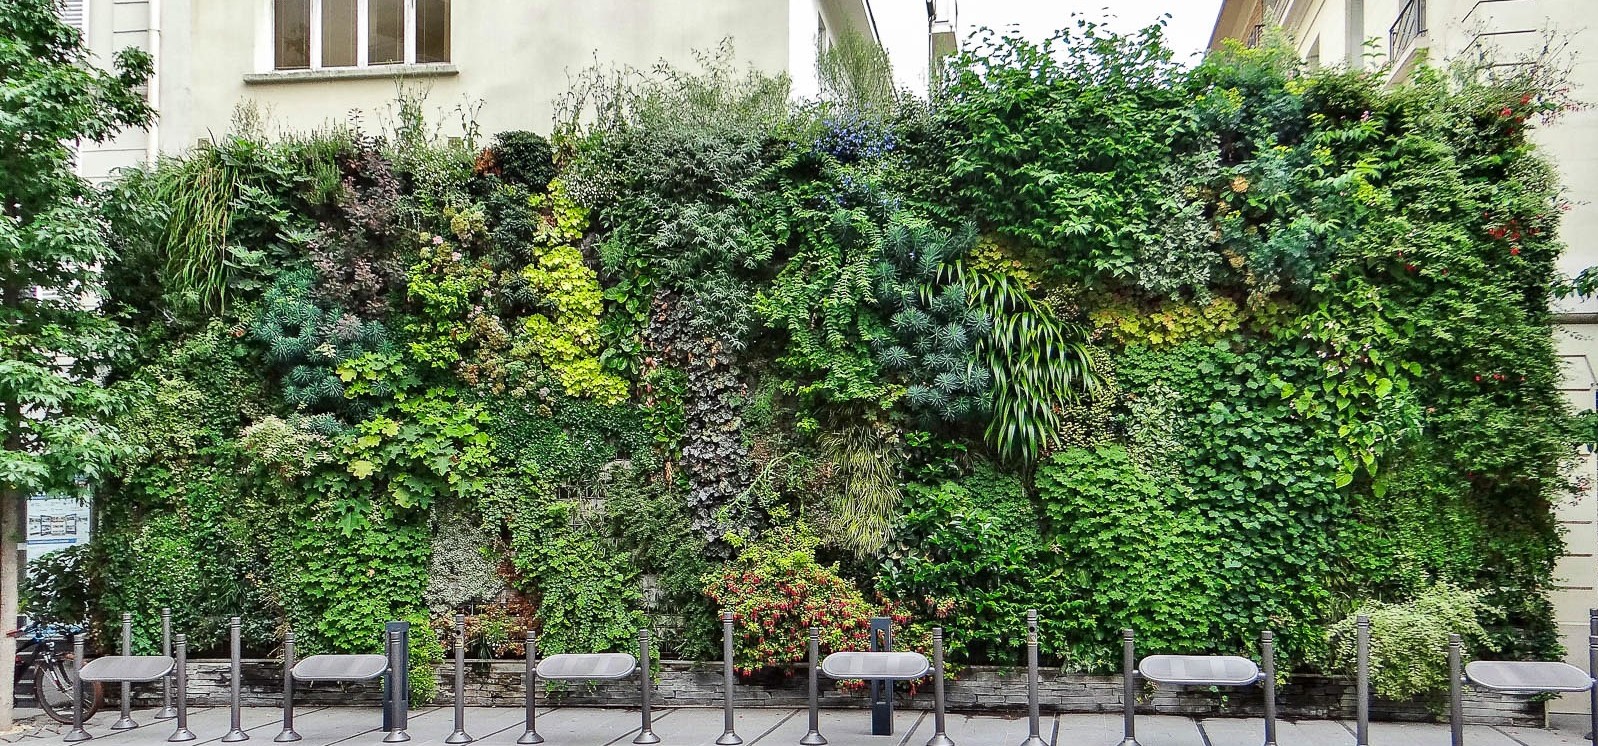 Les Murs Végétalisés des Champs Elysées - Jardins de Babylone